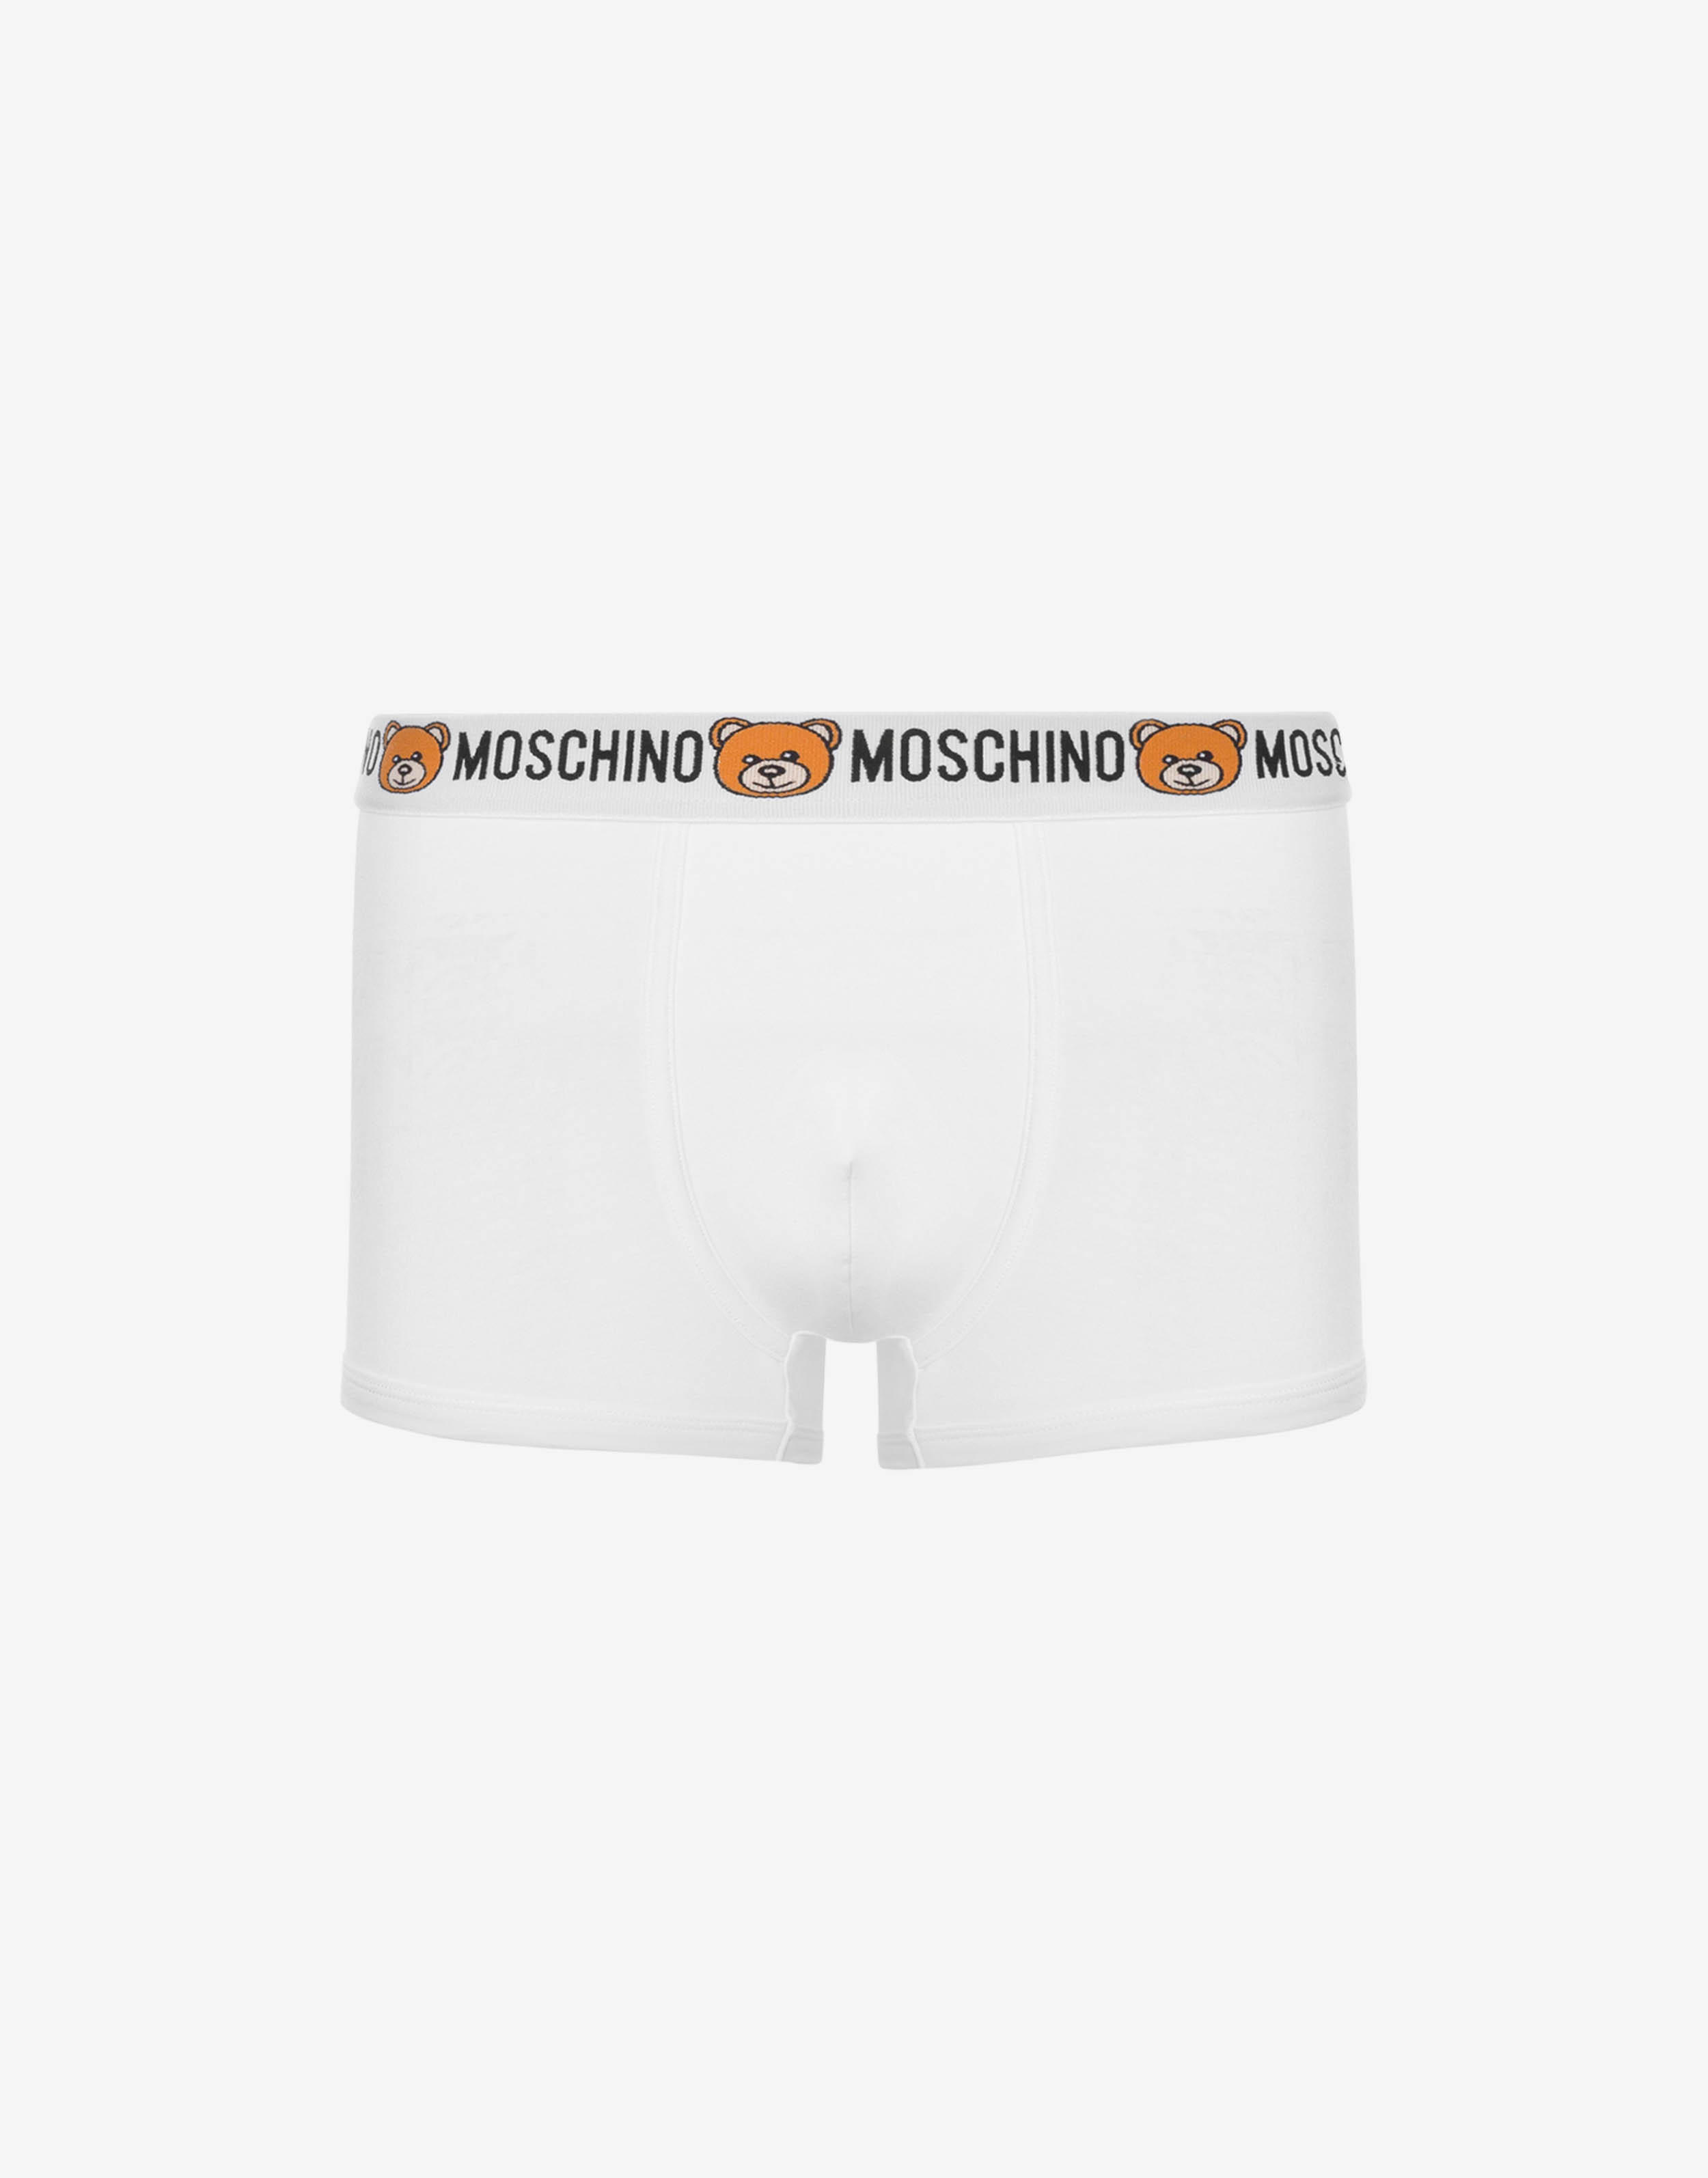 Moschino underwear Men XL size White Boxer pants 2 pieces